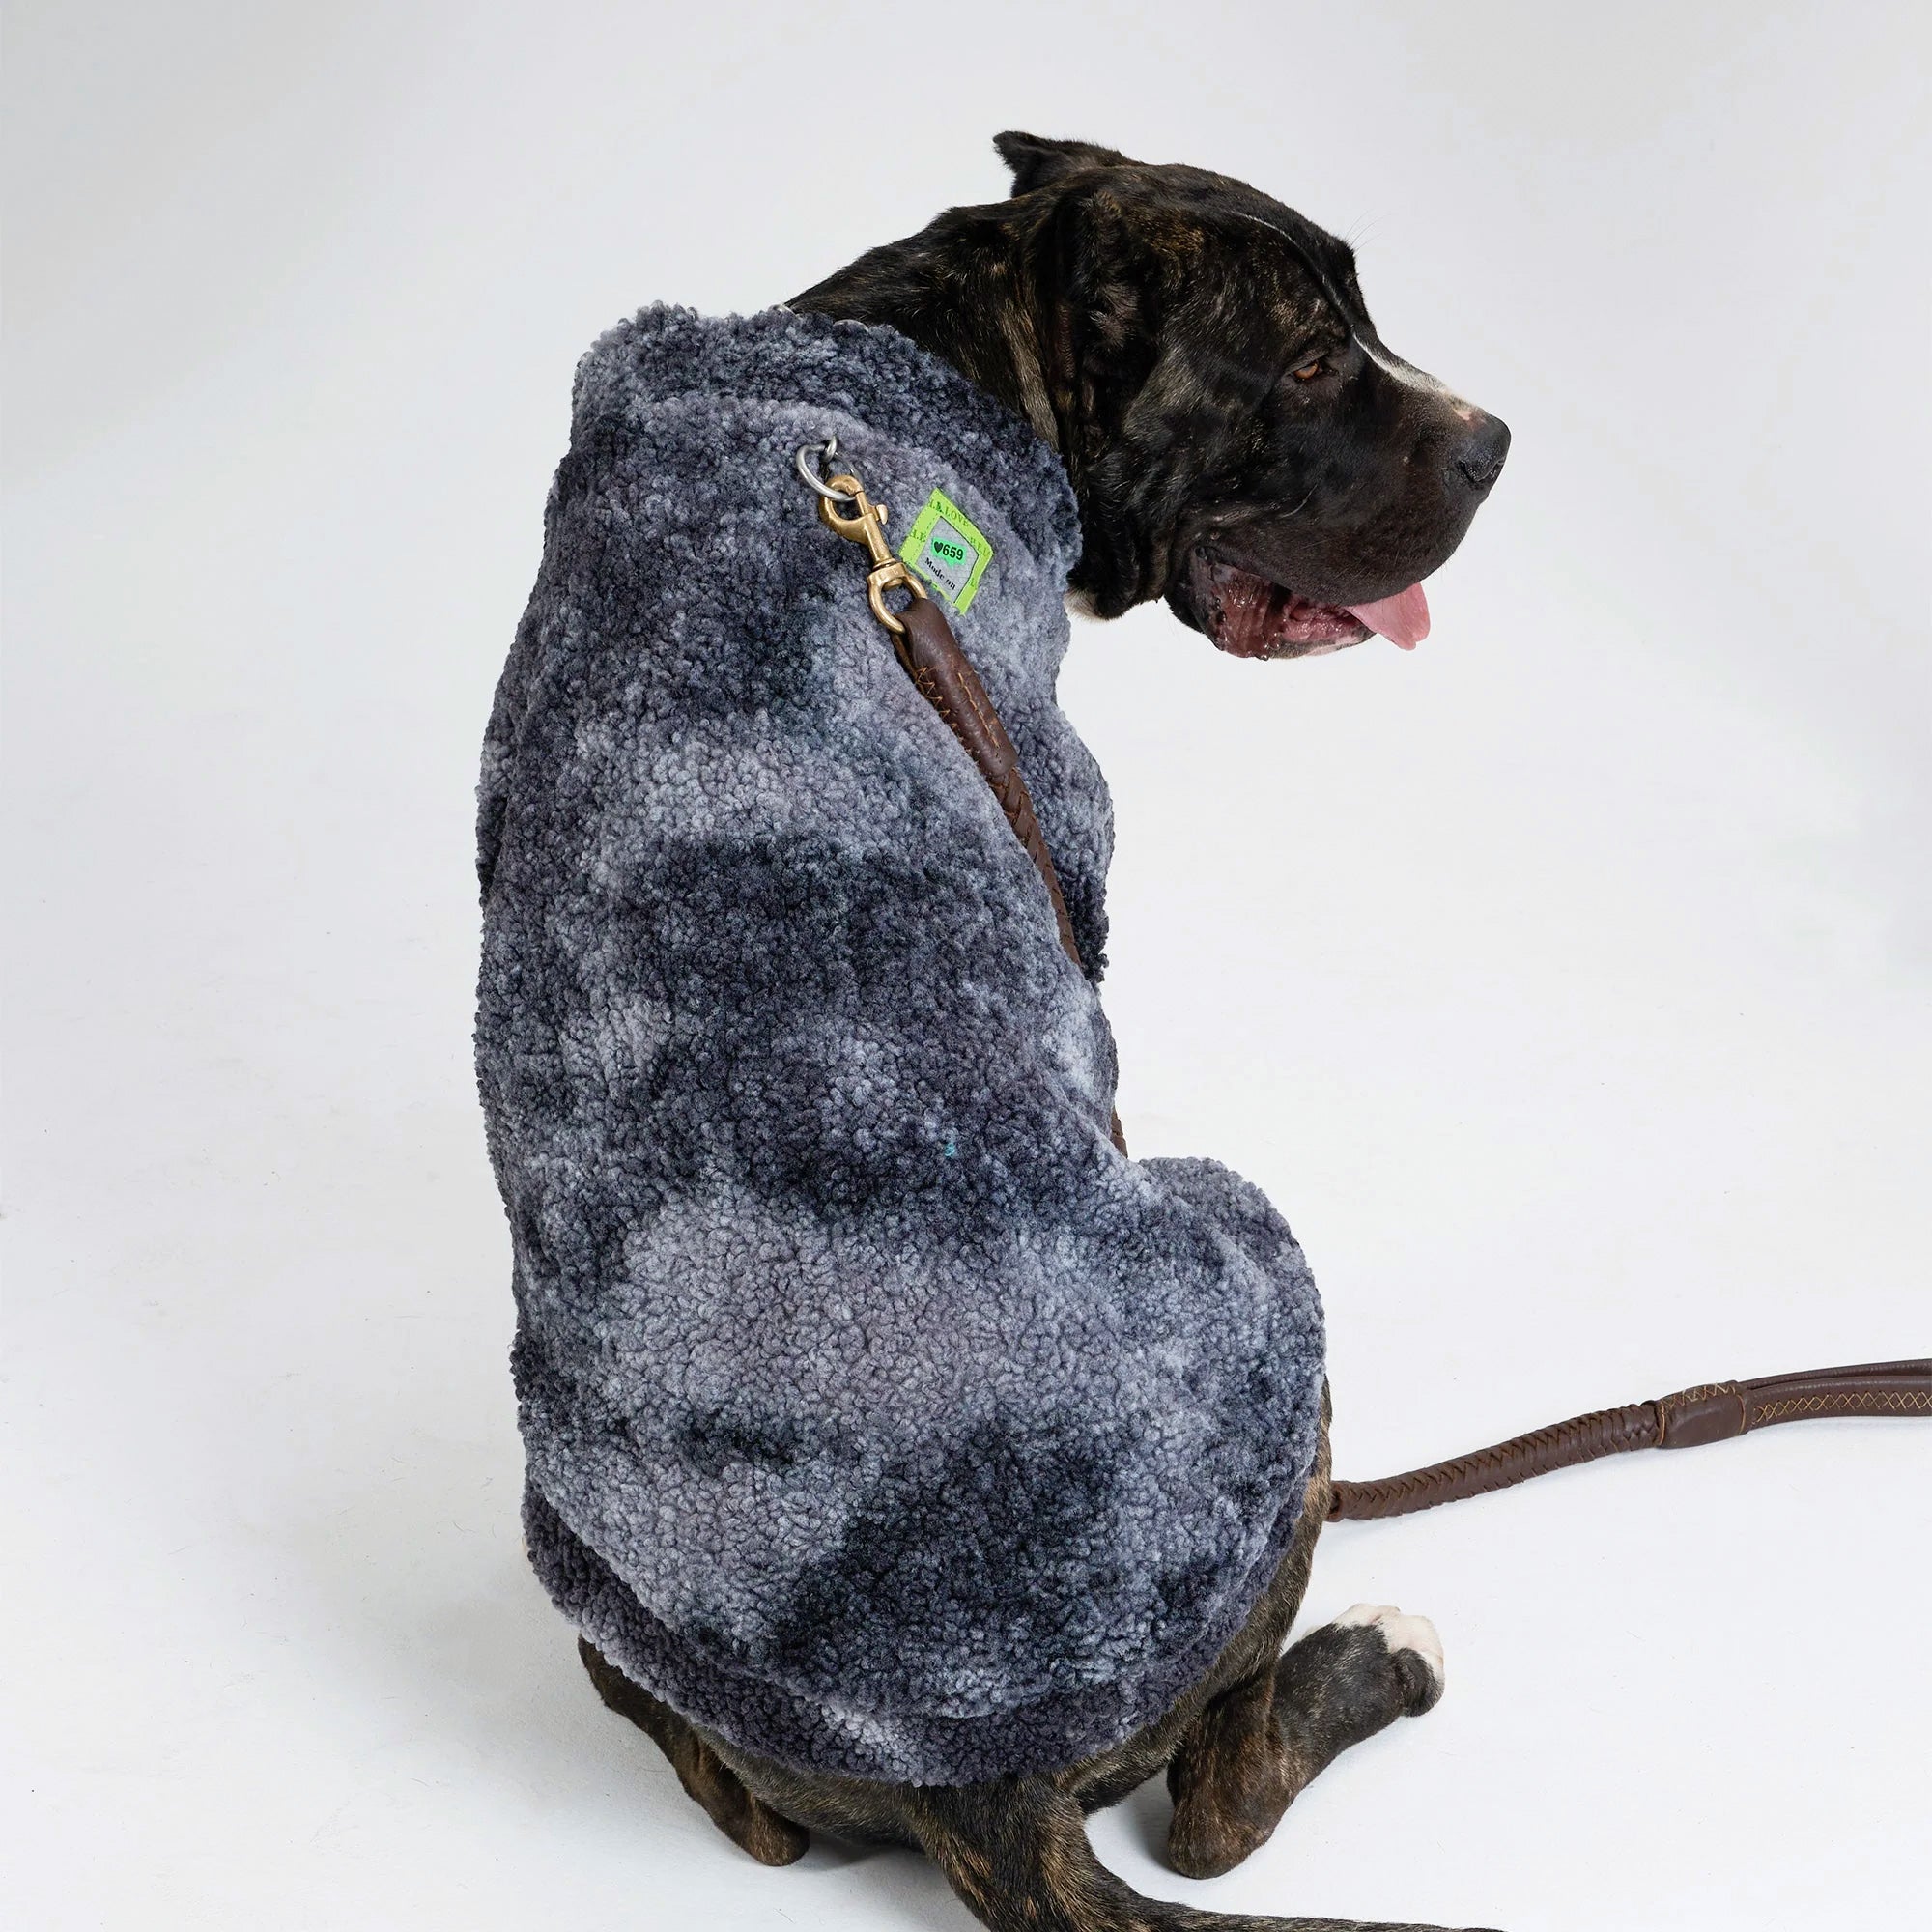 Pupwonders | Dog Hoodie Wool Sweater - Black,Black